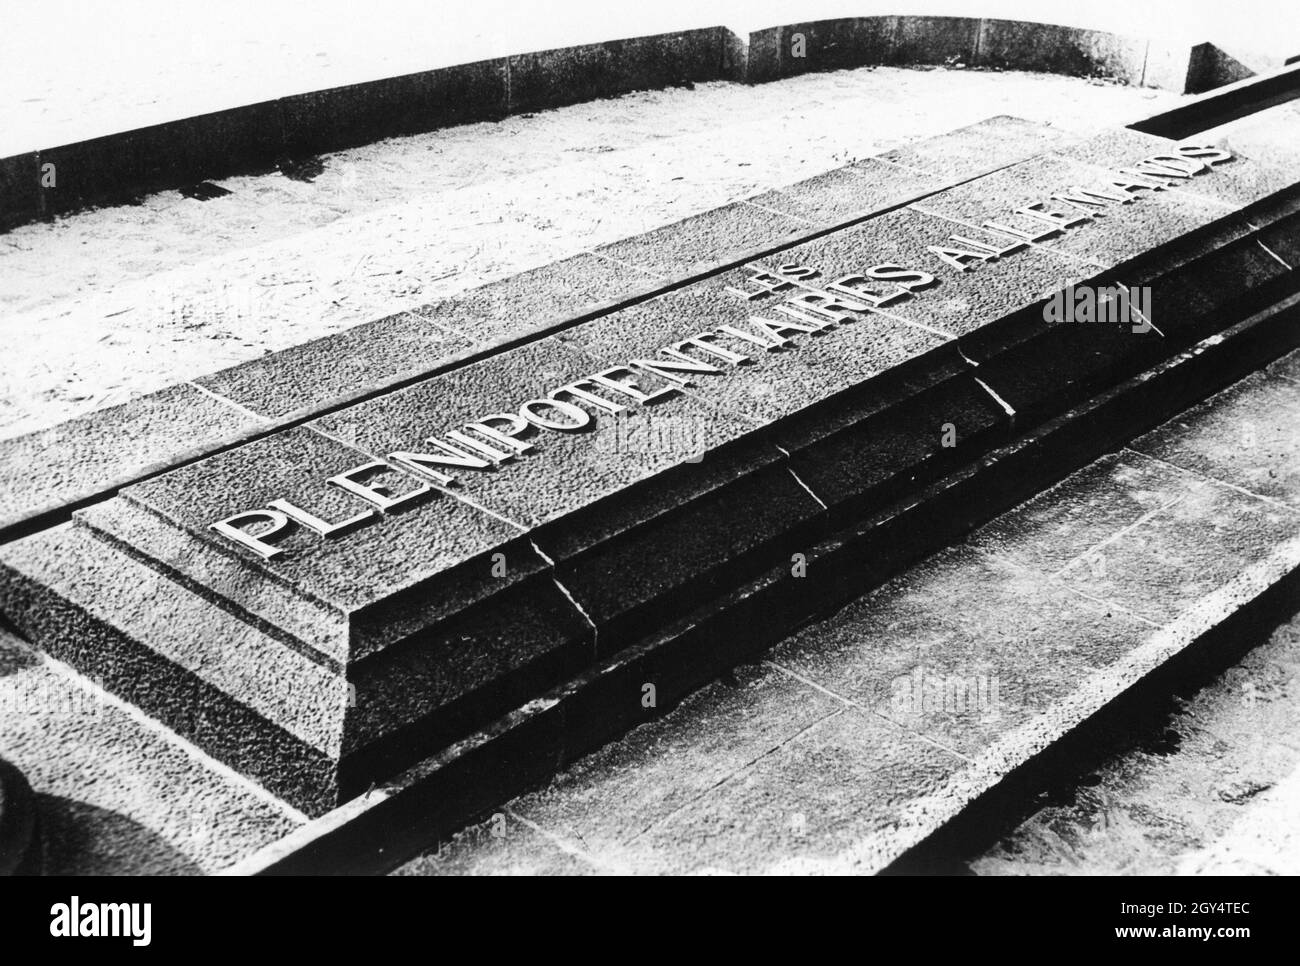 Gedenkstein auf der Lichtung von Rethondes in Compiègne. Auf dem Stein steht ''Les plenipotentiaires allemands'', was 'die deutschen Bevollmächtigten' bedeutet. [Automatisierte Übersetzung]' Stockfoto